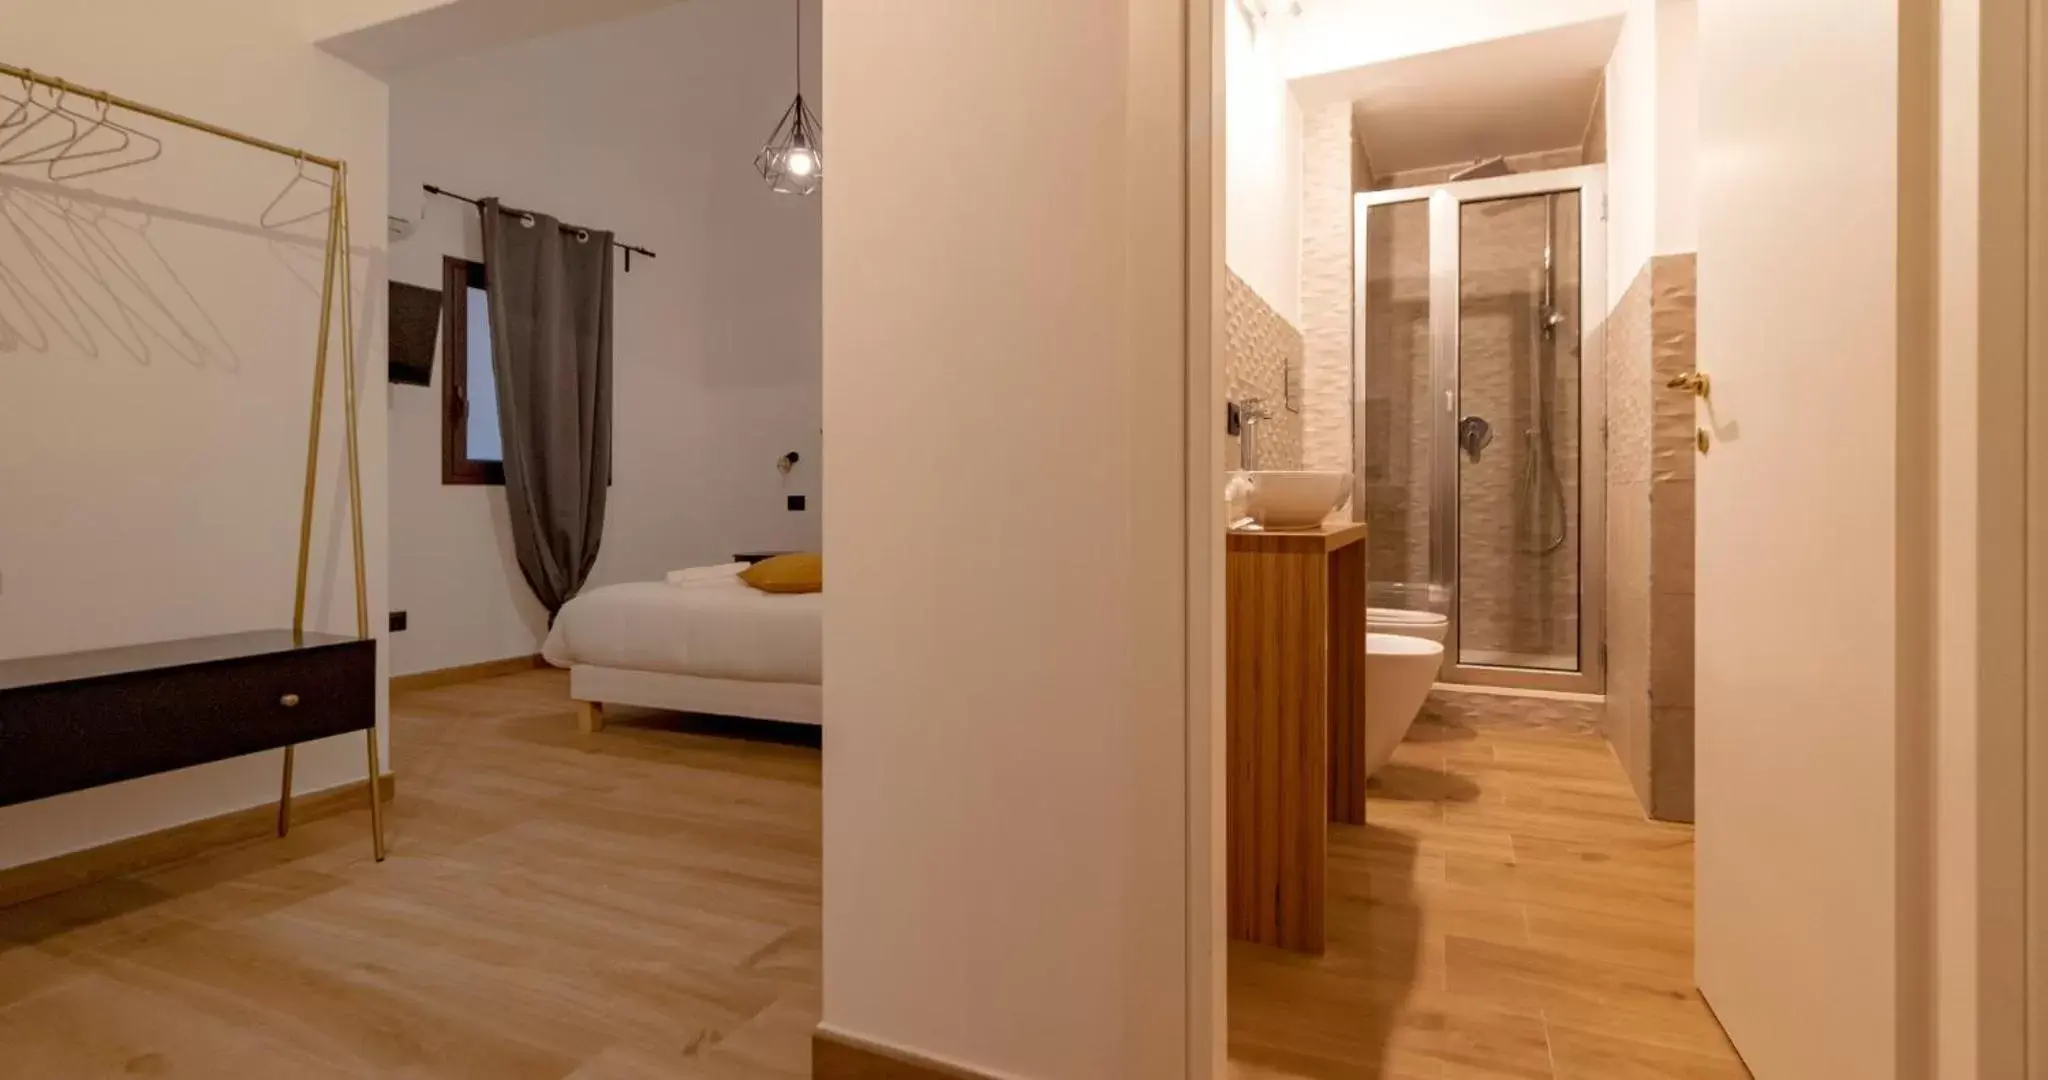 Bedroom, Bathroom in Siculis